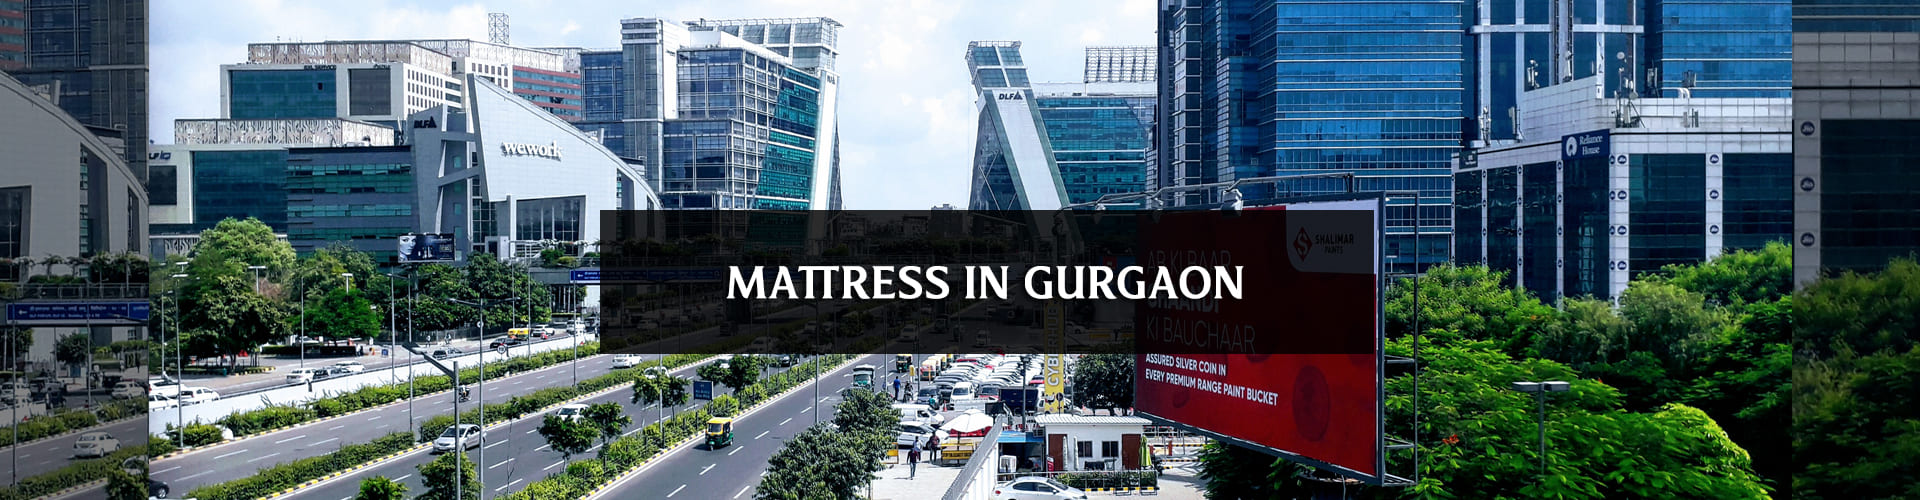 Buy natural latex mattress online in gurgaon